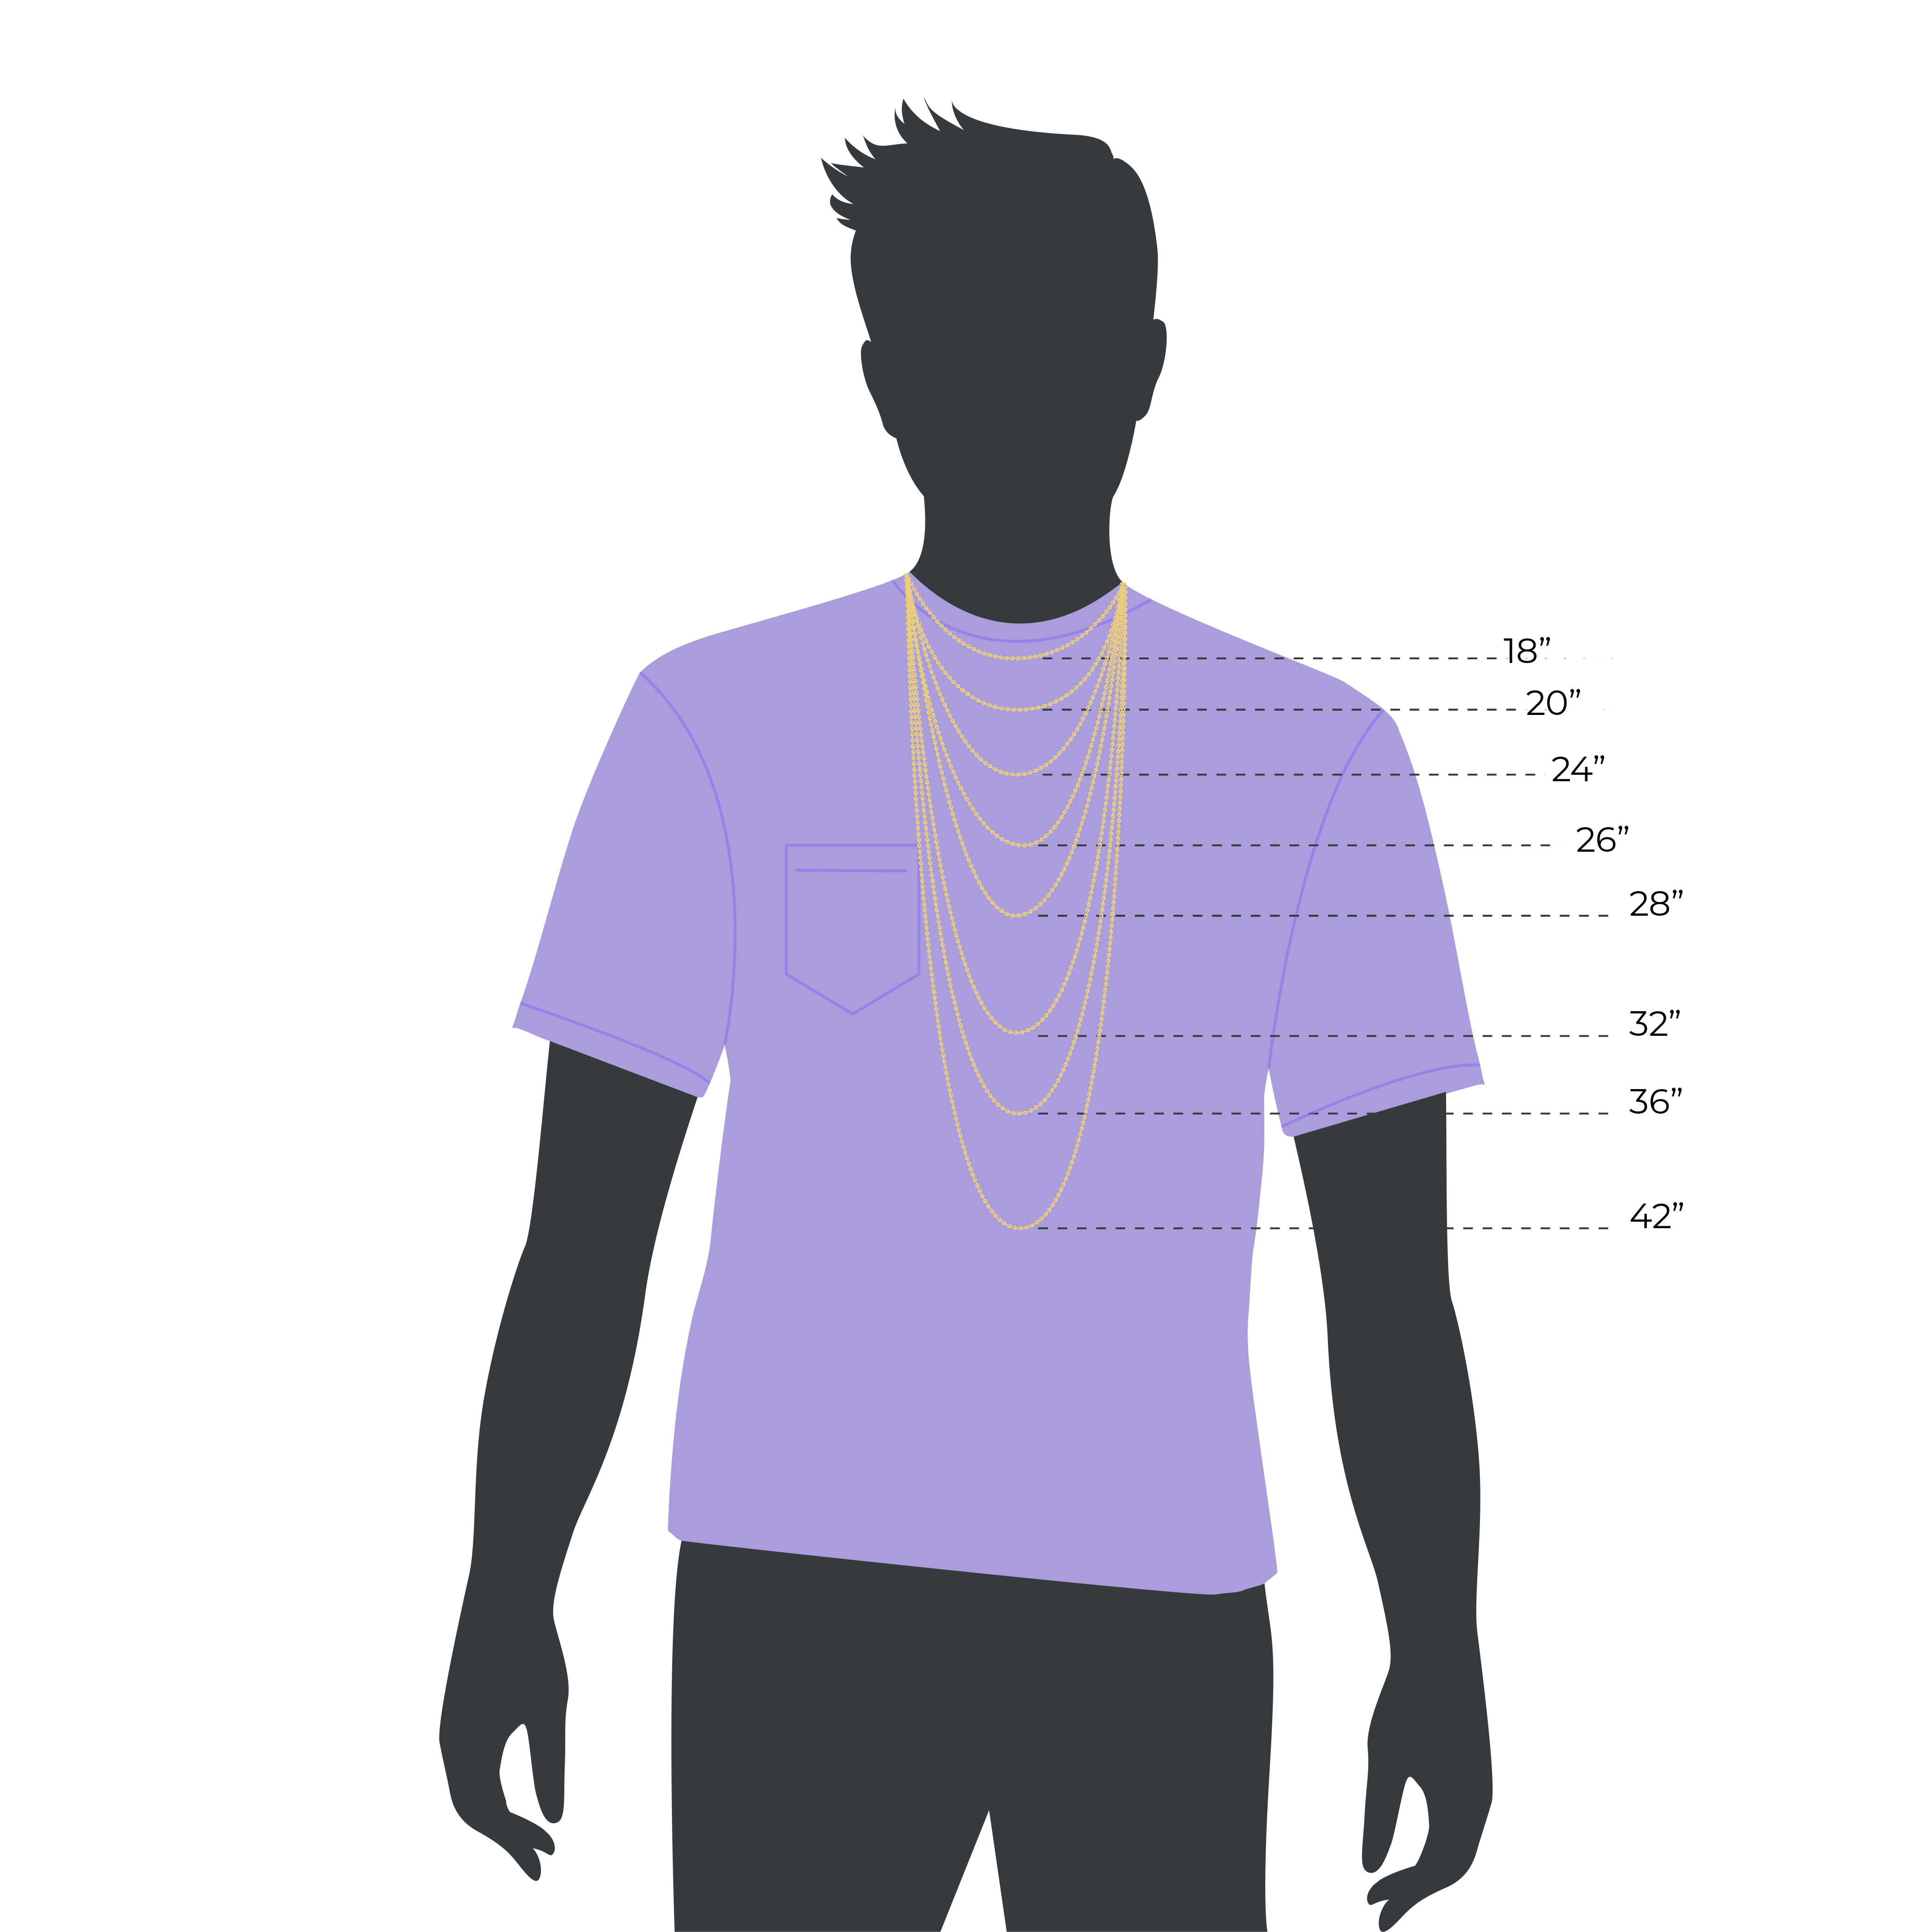 Male Silhouette Chain Size Guide